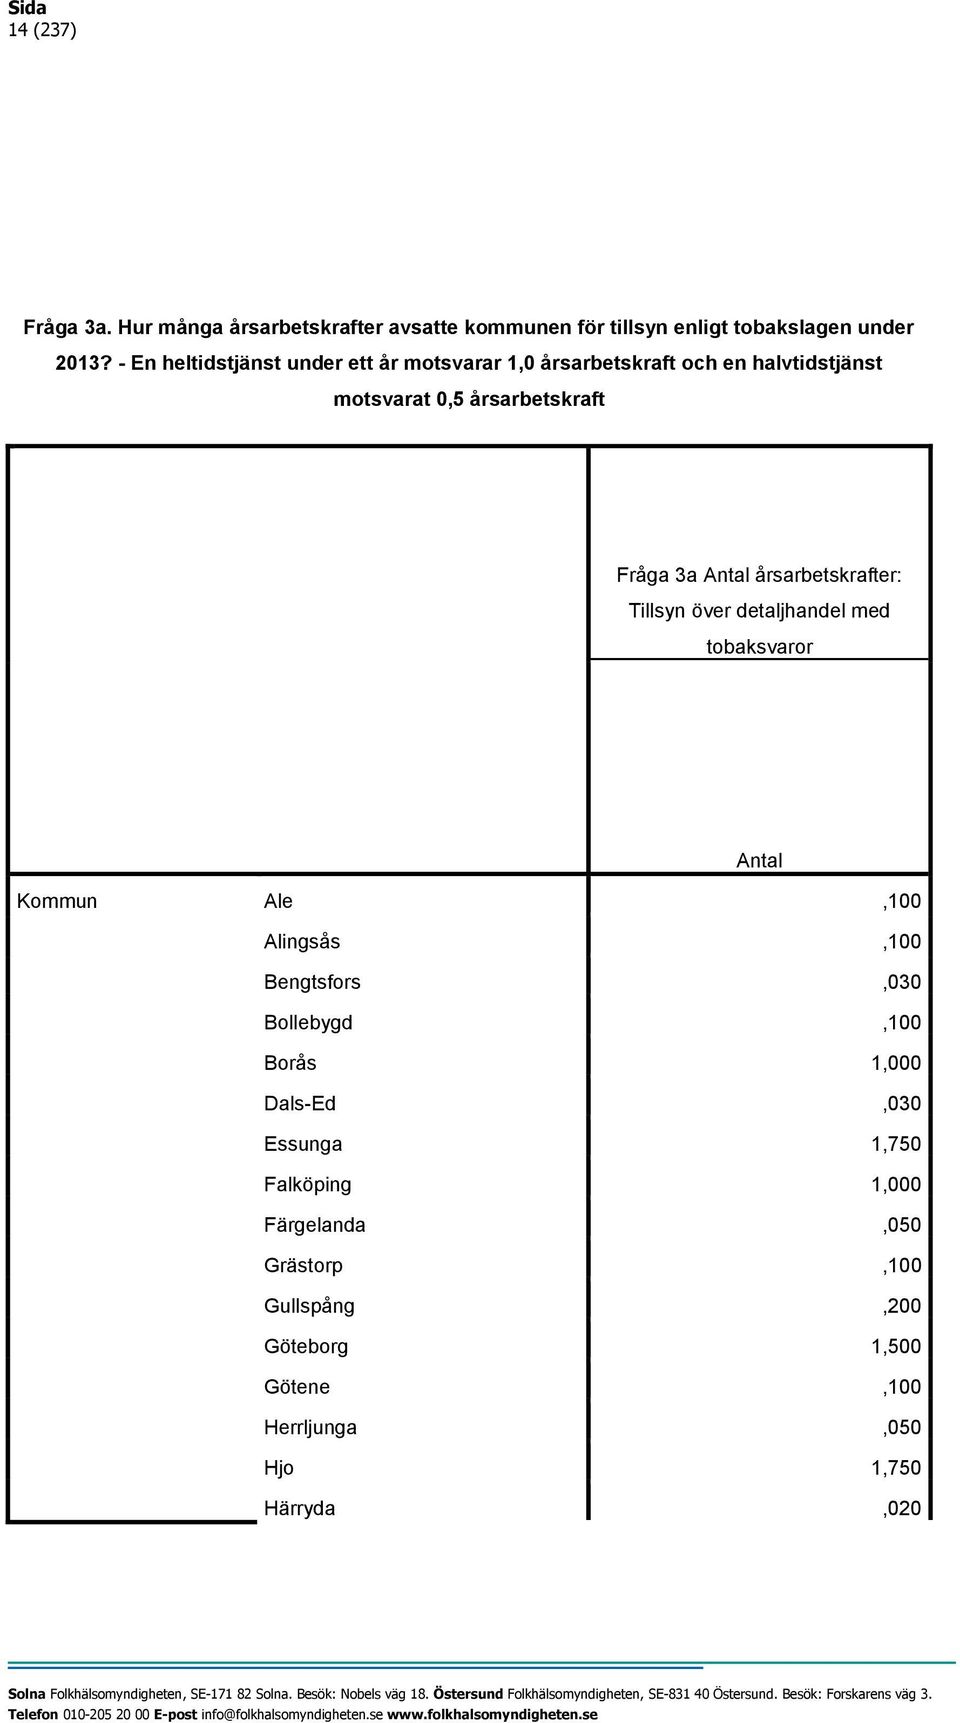 årsarbetskrafter: Tillsyn över detaljhandel med tobaksvaror Antal Kommun Ale,100 Alingsås,100 Bengtsfors,030 Bollebygd,100 Borås